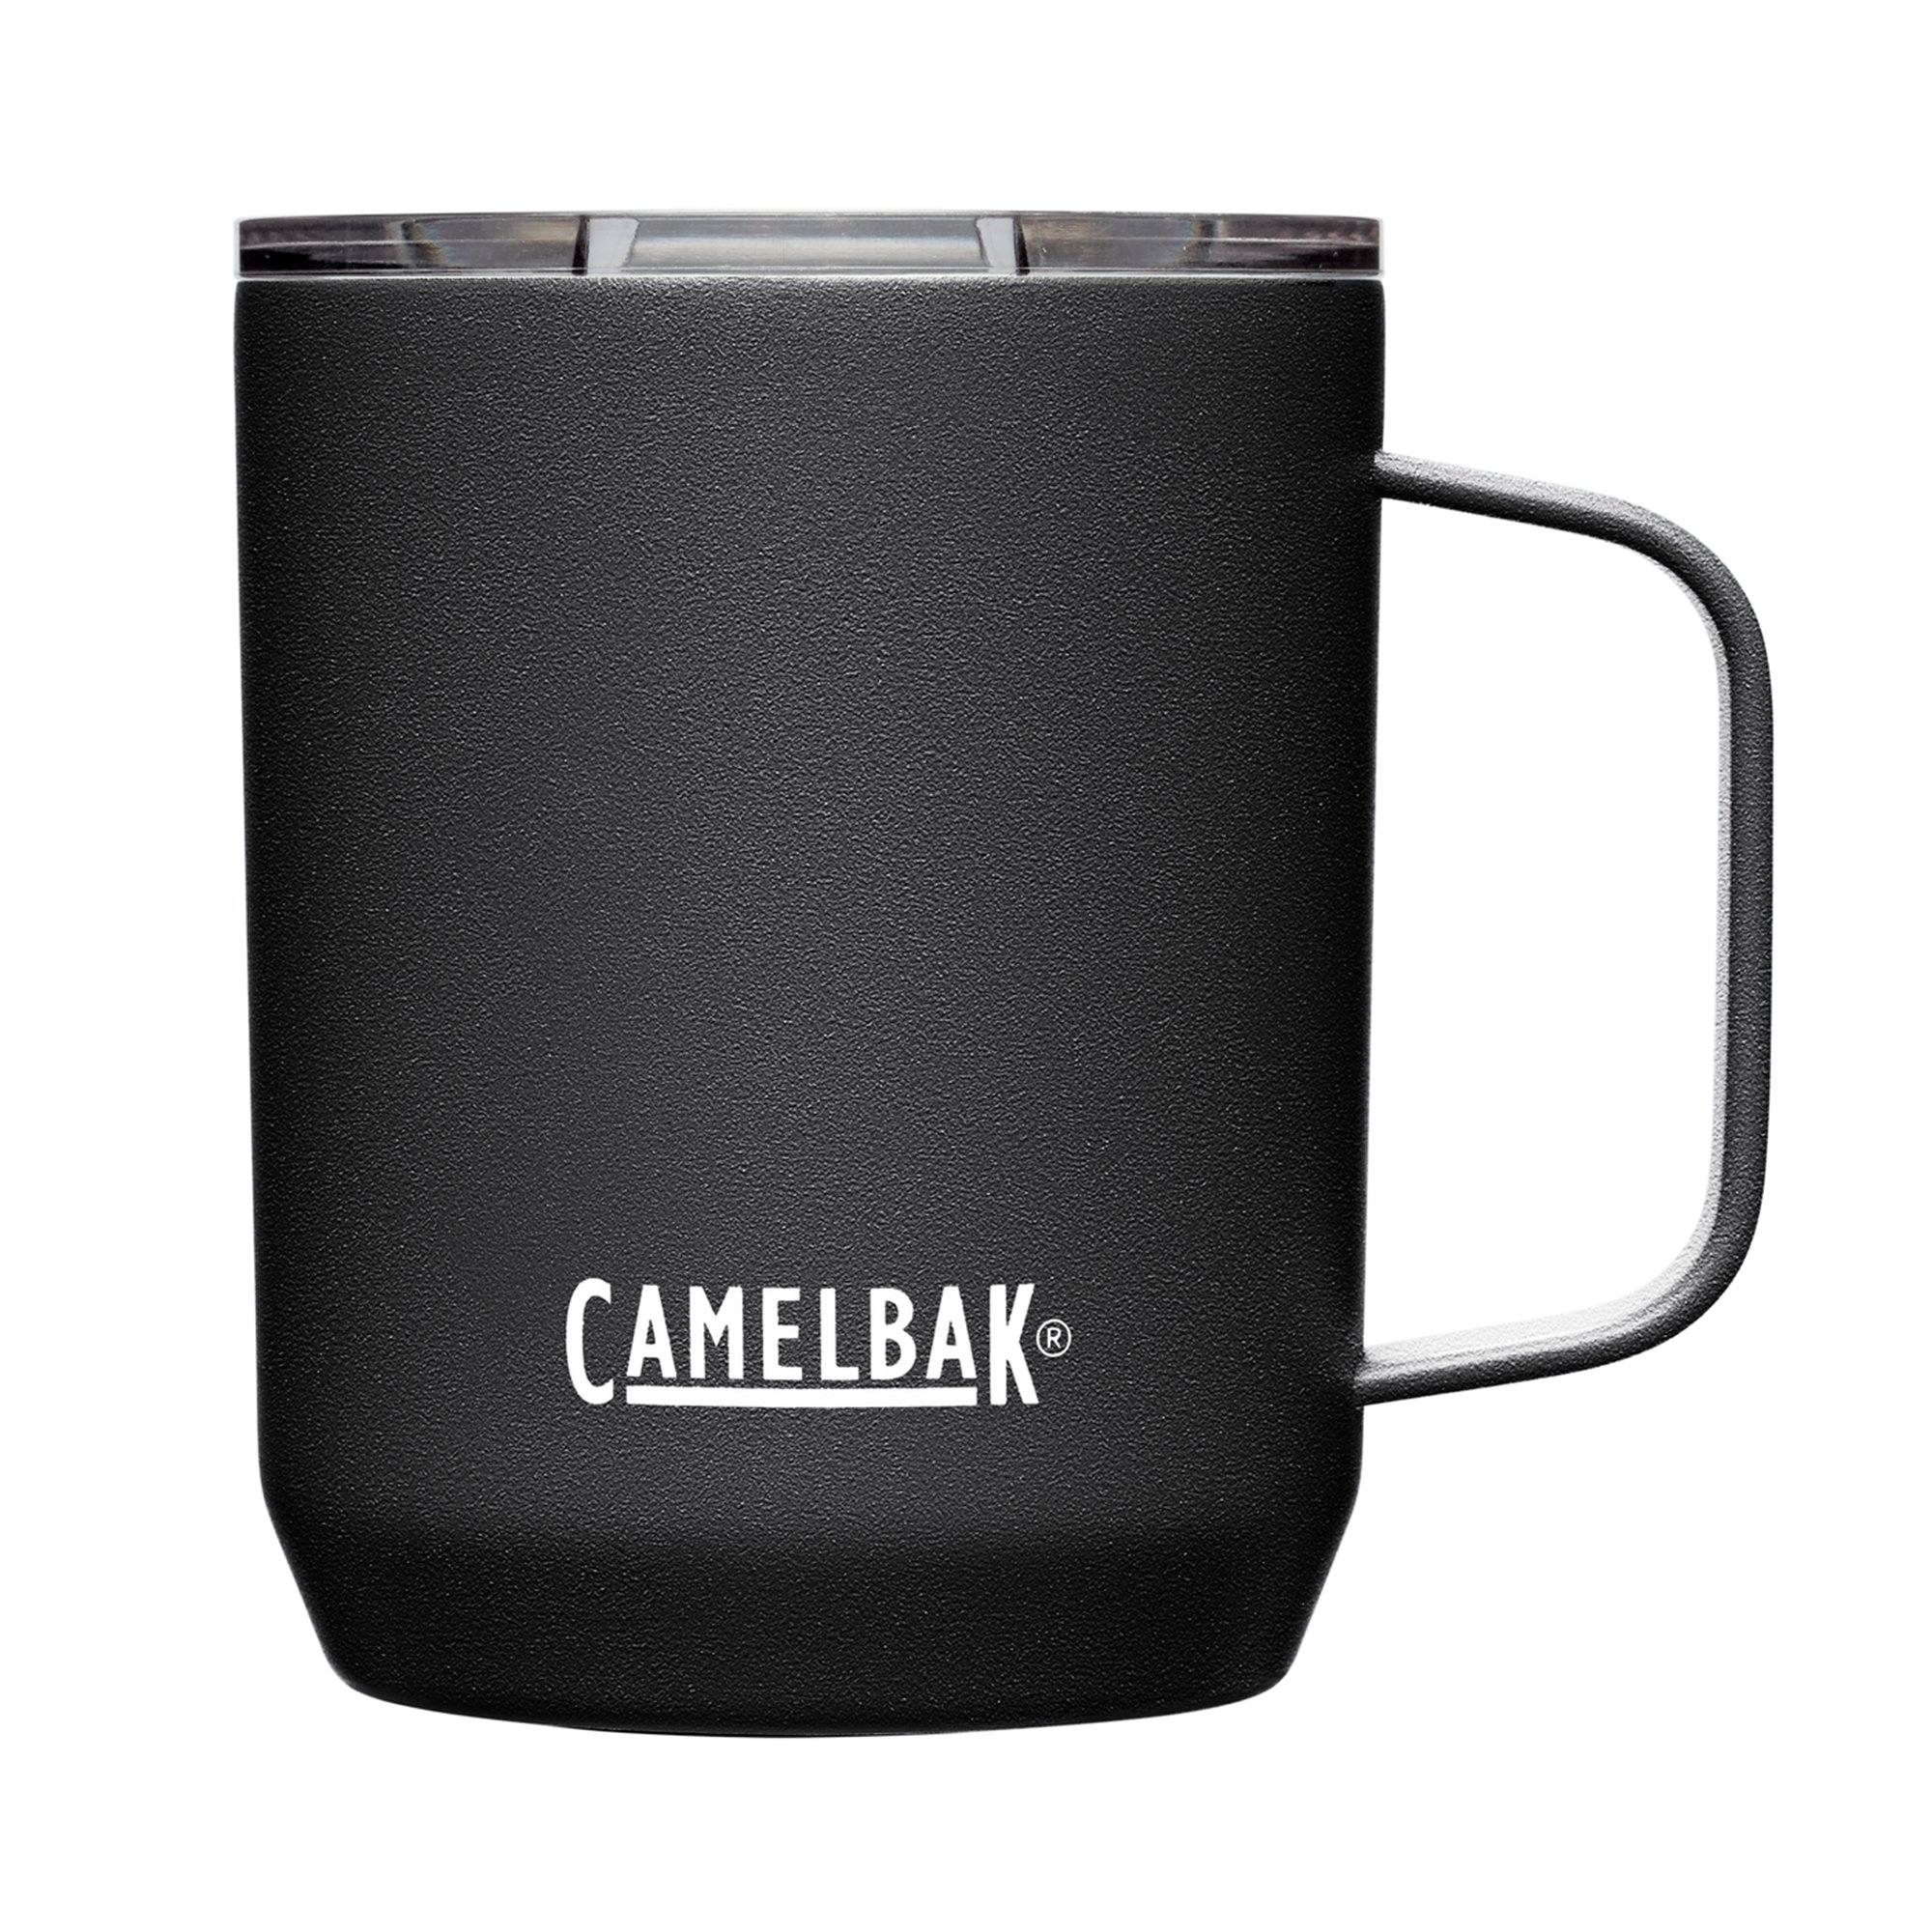 Camelbak Termosmugg 0,35 liter black